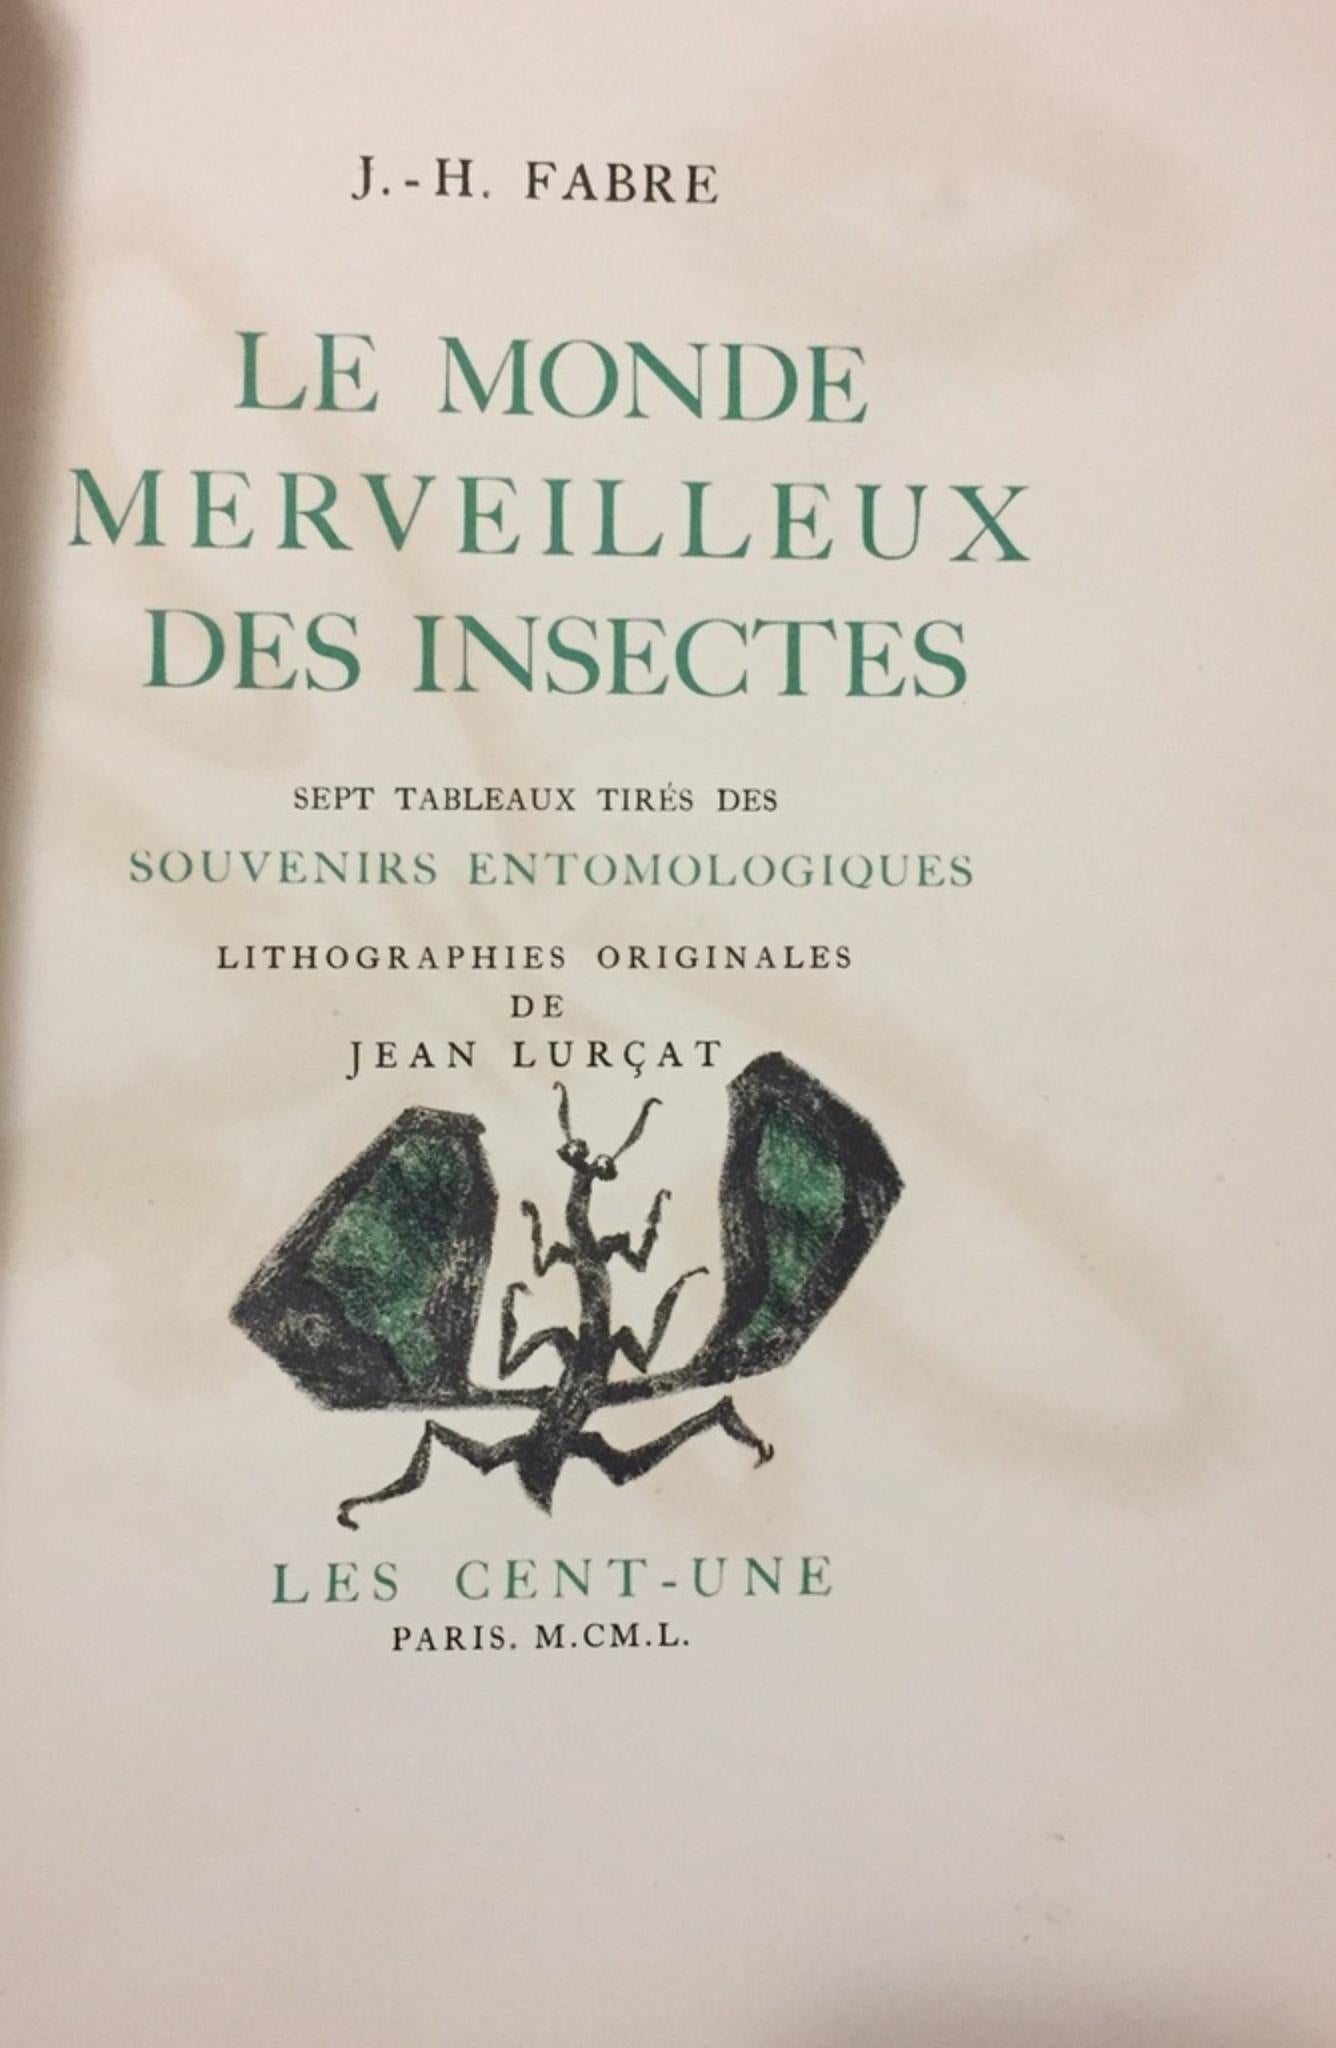 Le Monde Merveilleux des Insectes - Rare Book Illustrated by Jean Lurçat - 1950